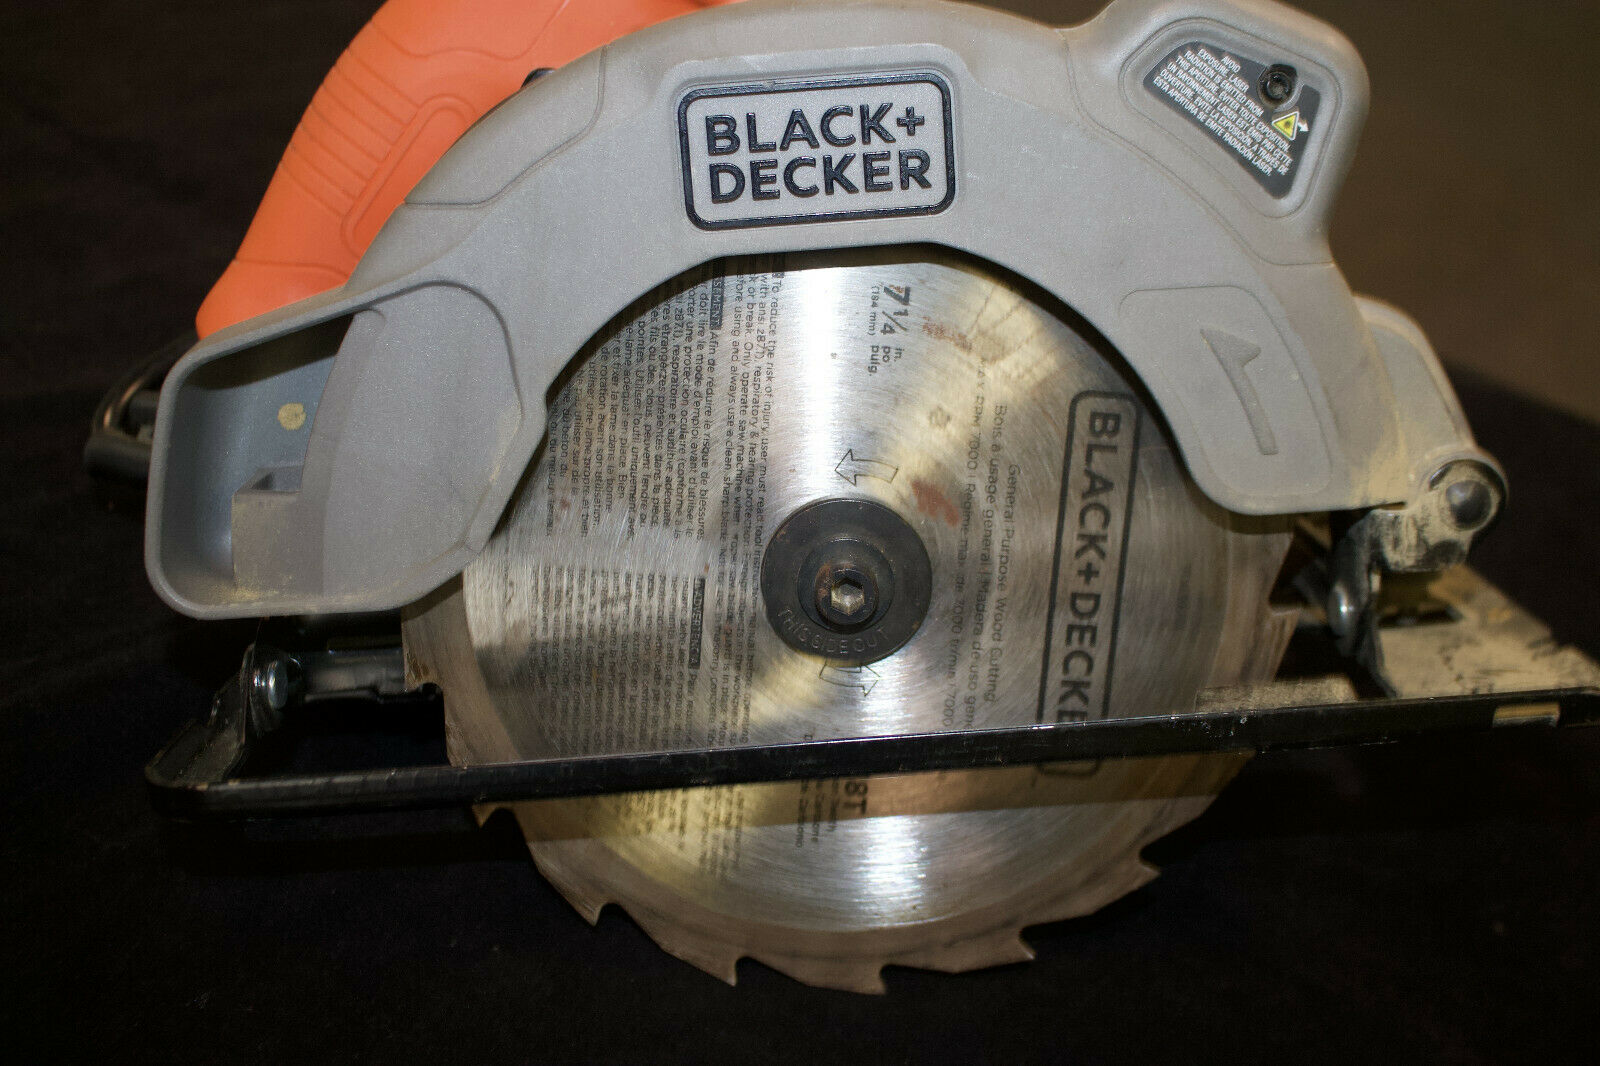 Замена диска циркулярной пилы black and decker - все, что нужно и полезно знать об инструментах